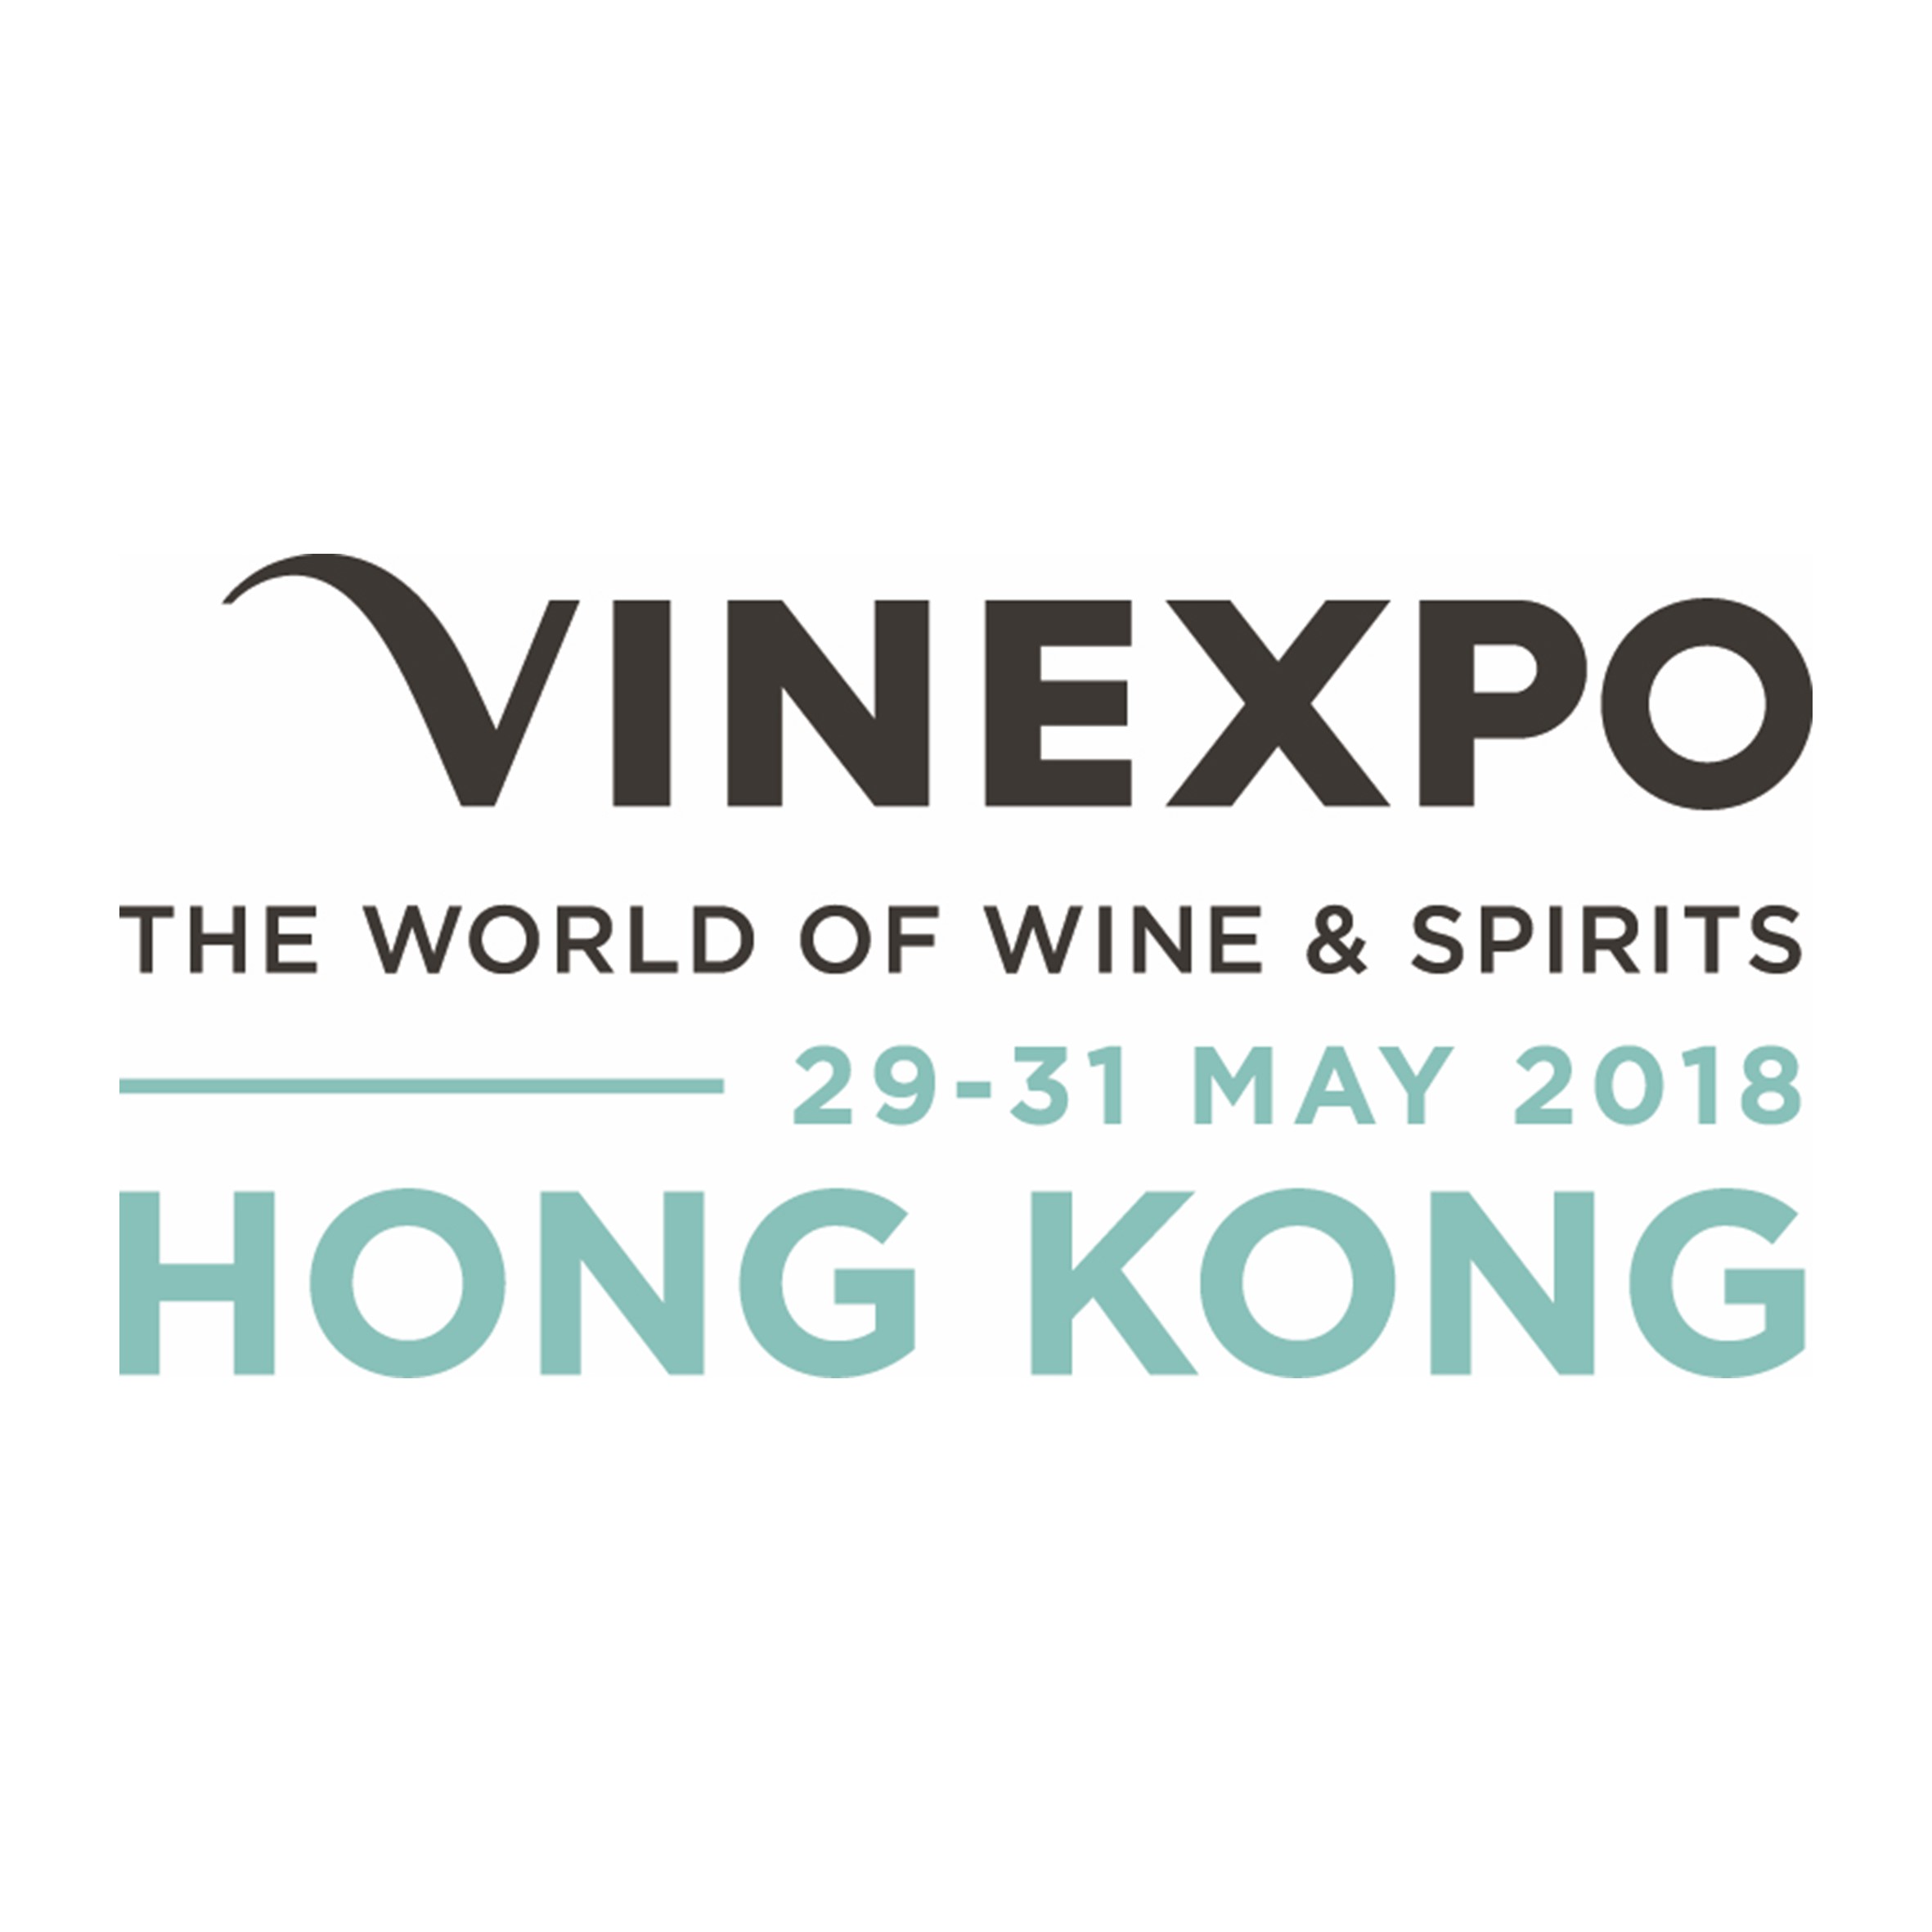 Vinexpo Hong Kong Logo 2018 - Rubles and wine